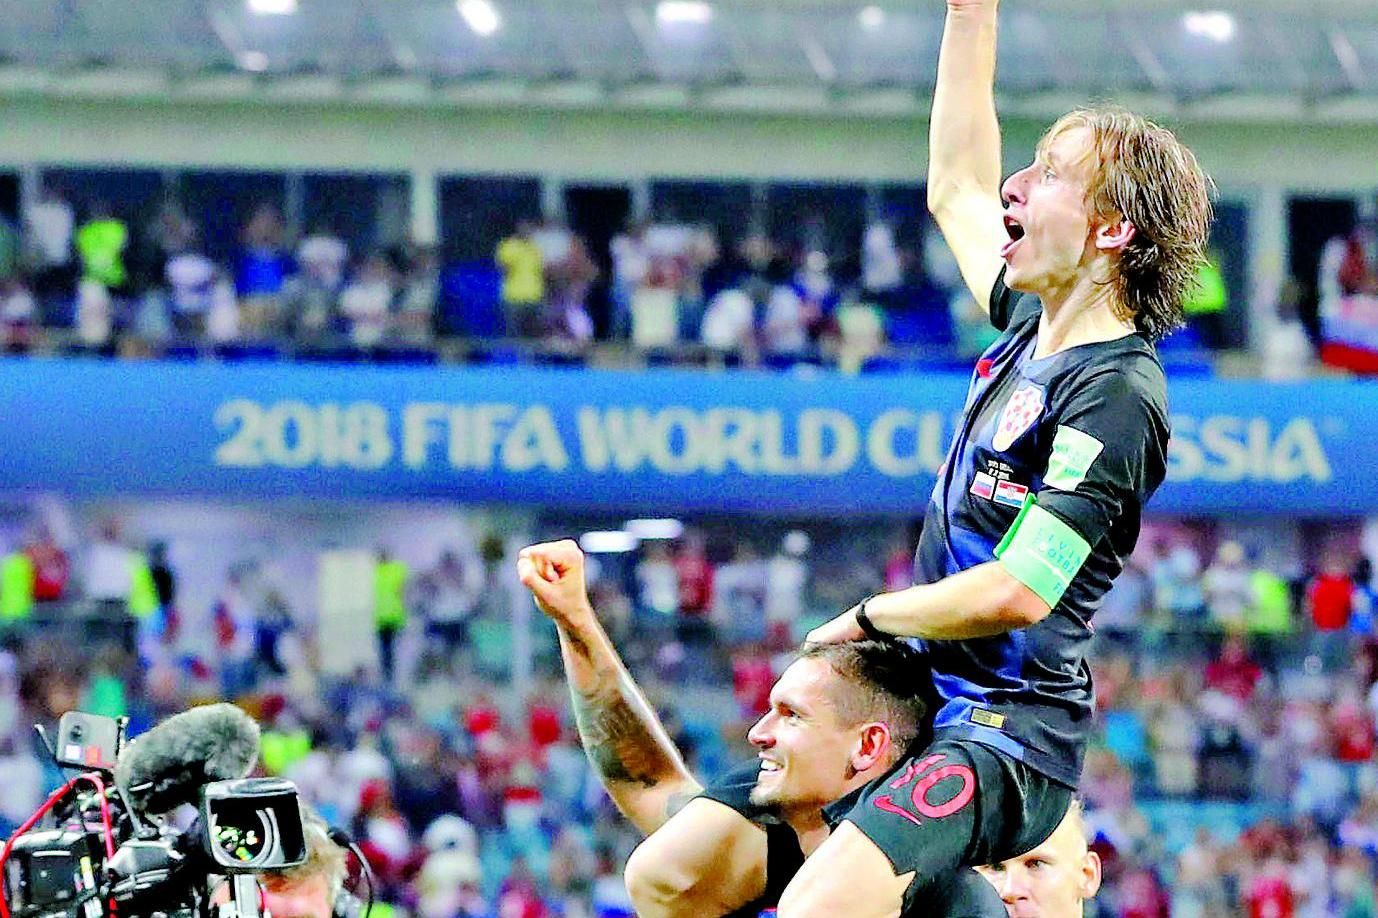 Copa do Mundo 2018: França bate Croácia e conquista bicampeonato